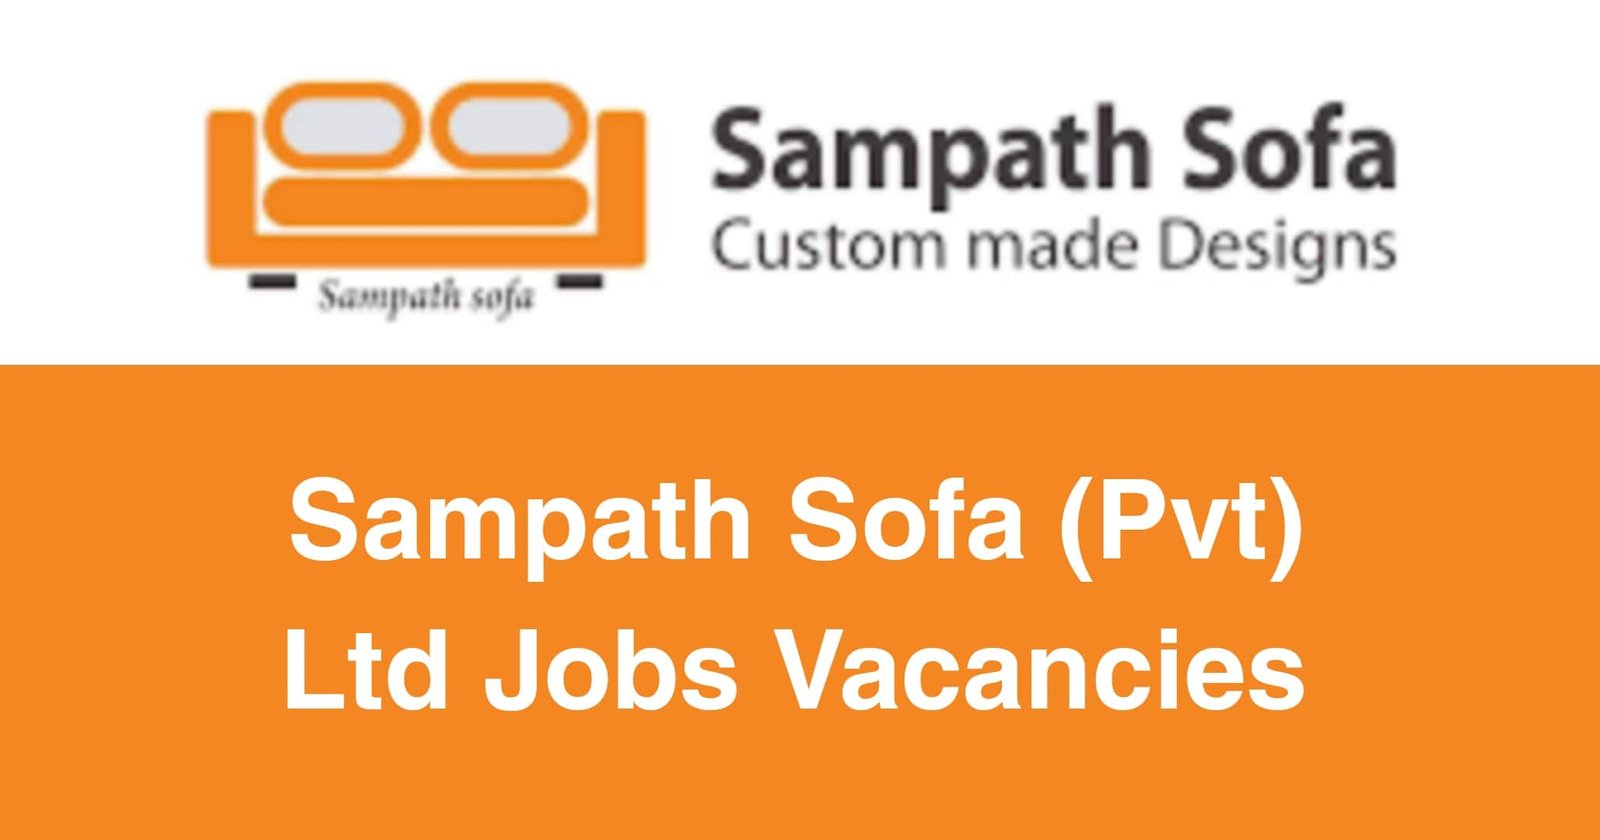 Sampath Sofa (Pvt) Ltd Jobs Vacancies